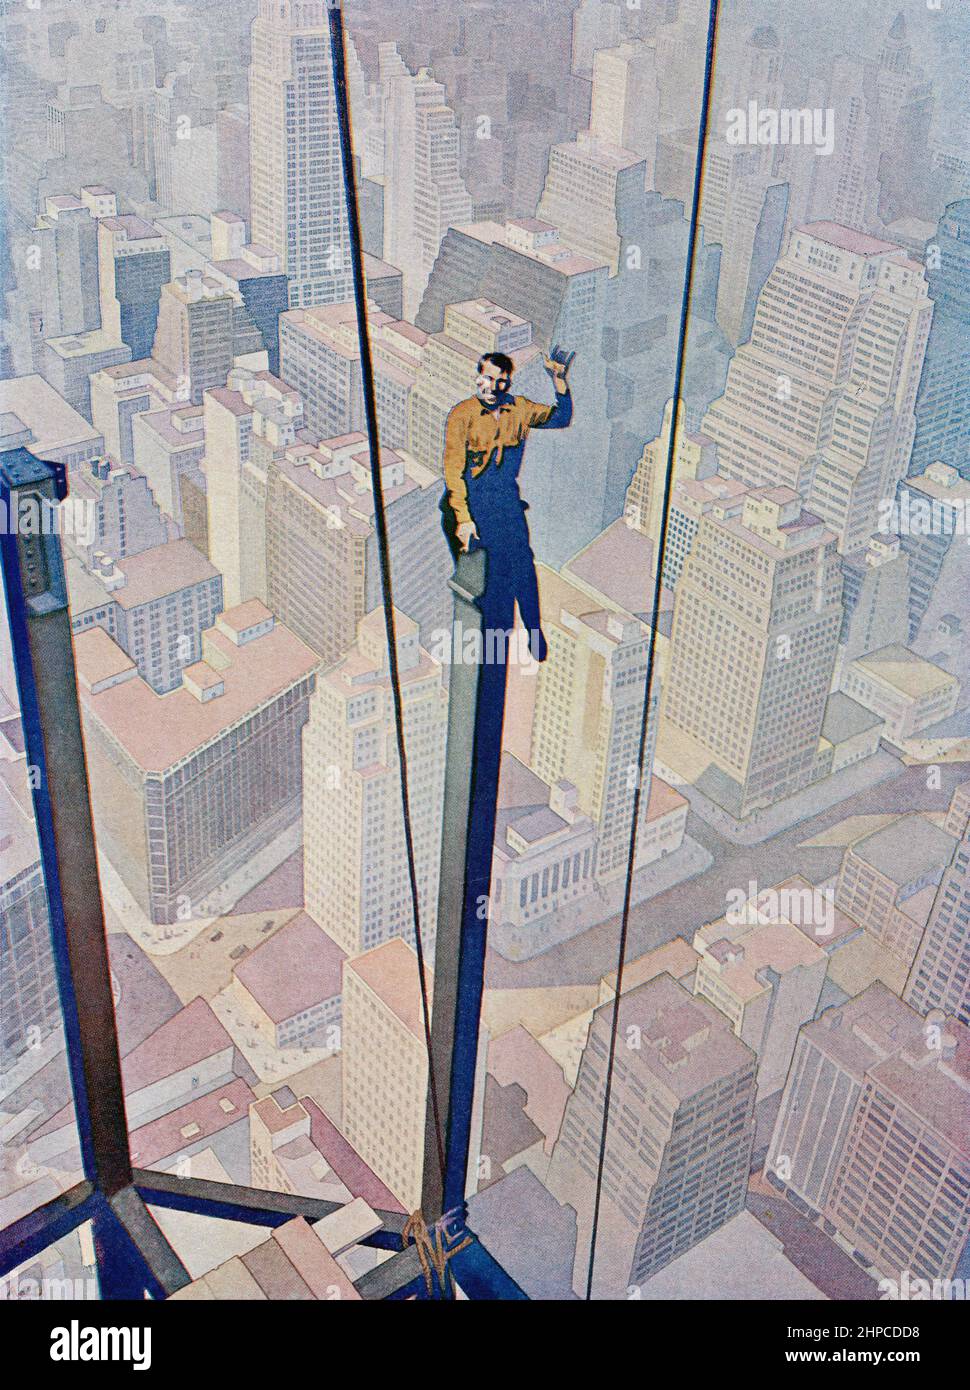 Arbeiter sitzen mit einem Stahlträger während des Gebäudes eines Wolkenkratzers in New York Amerika in den 1930er Jahren. Aus dem Wonder Book of Science, erschienen in den 30er Jahren. Stockfoto